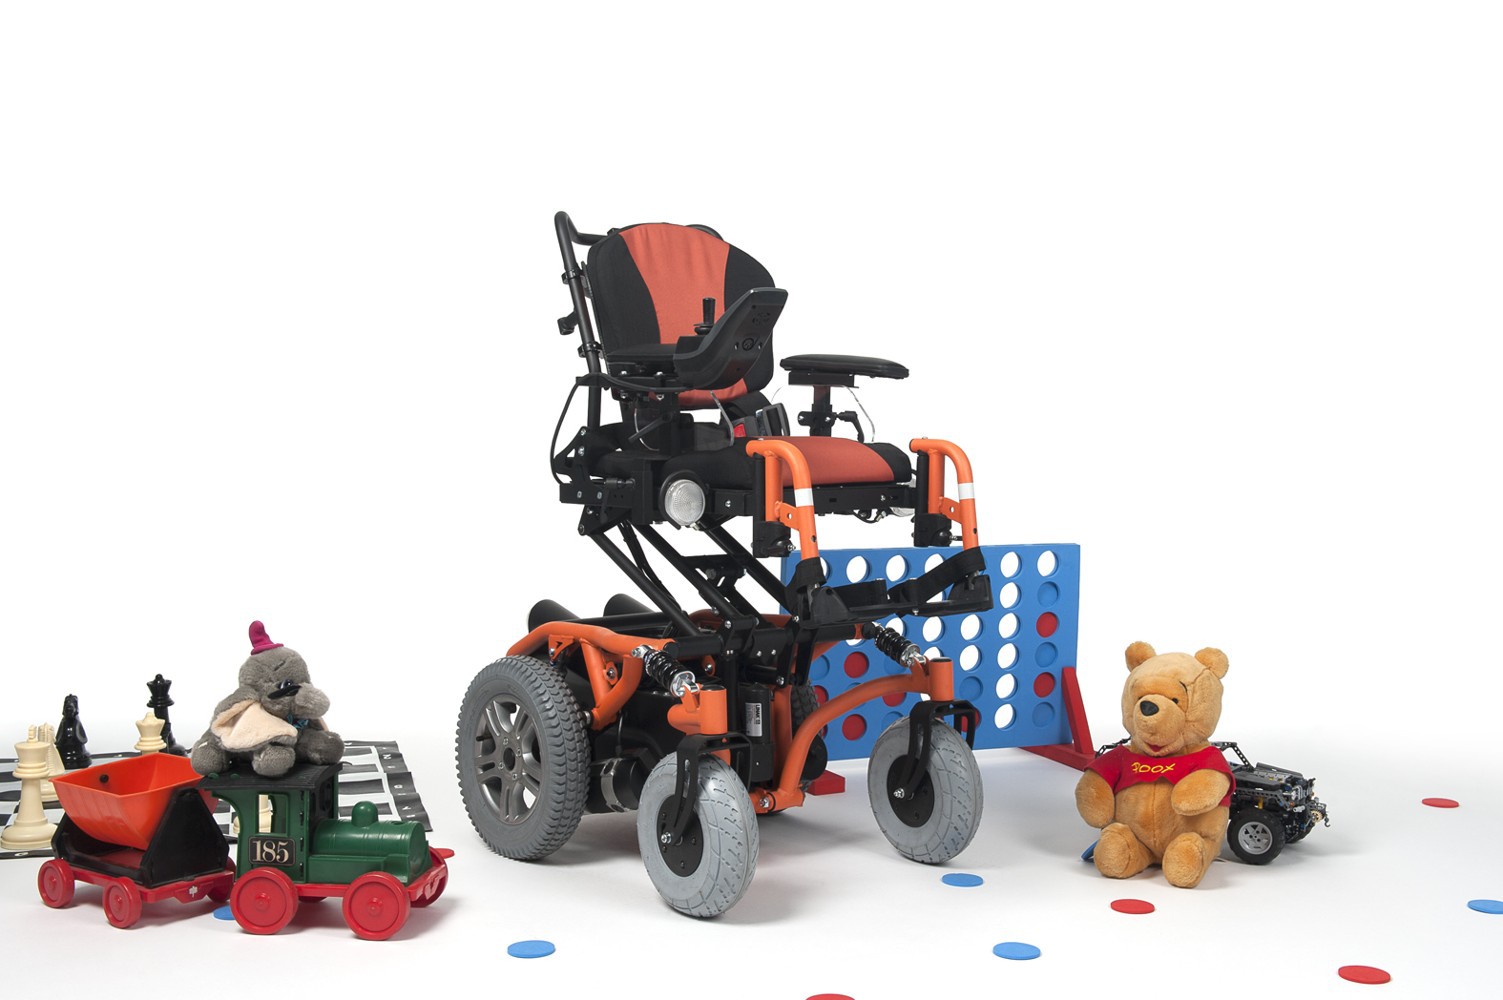 Кресло-коляска инвалидное с электроприводом Vermeiren Springer Kids